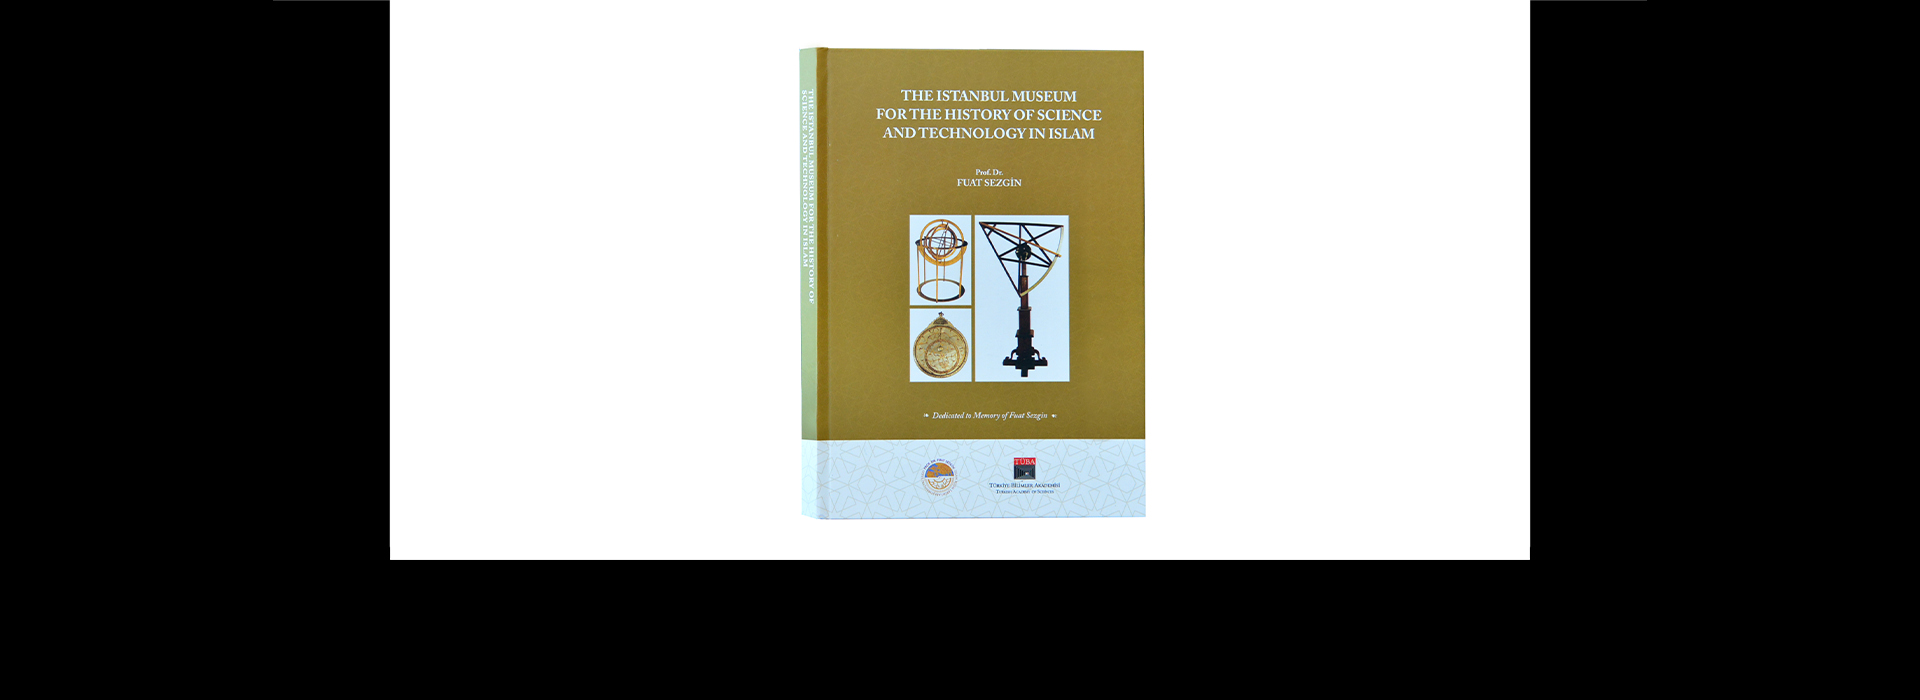 TÜBA Üyesi Prof. Sezgin Anısına 'İslam Bilim ve Teknoloji Tarihi Müzesi’nin Detayları'